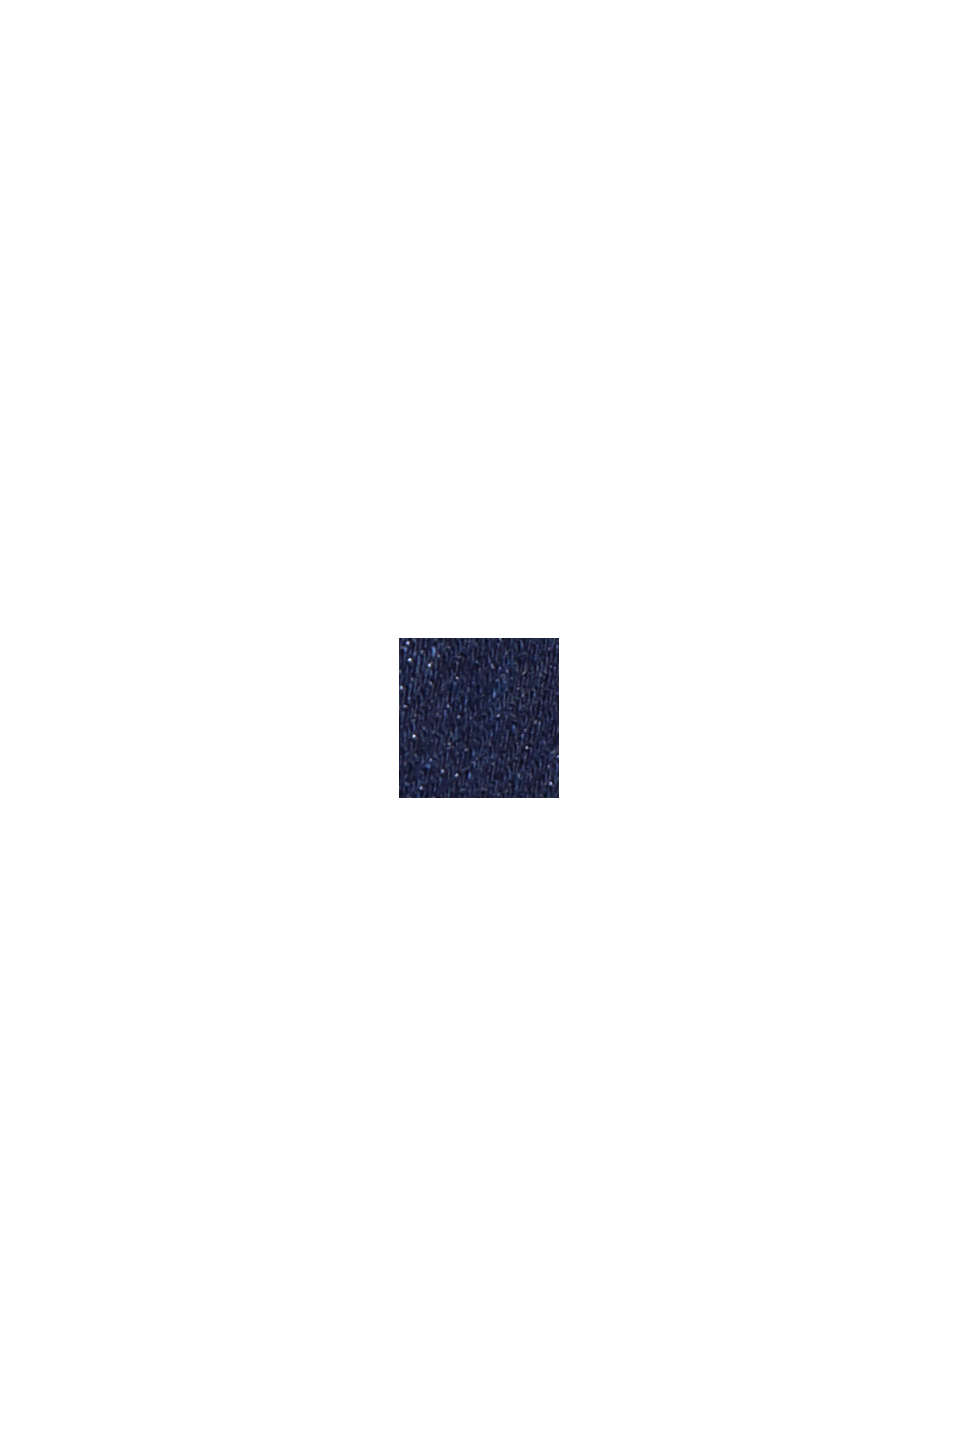 Denimskjorte af bomuldsblanding, BLUE RINSE, swatch